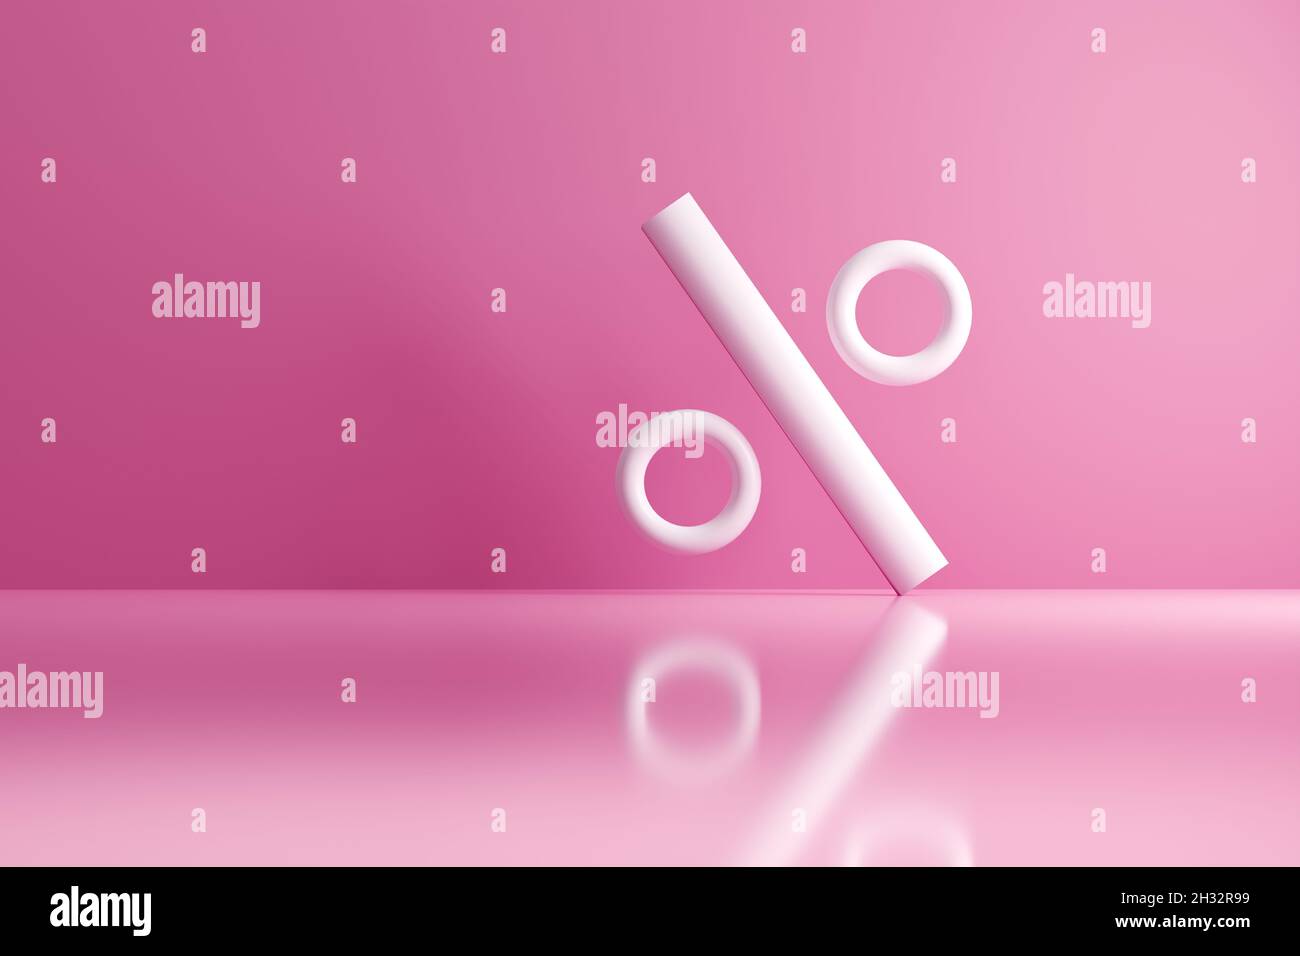 Simbolo percentuale bianco su sfondo rosa. Concetto di tag metadati dei social media nel rendering 3D. Foto Stock